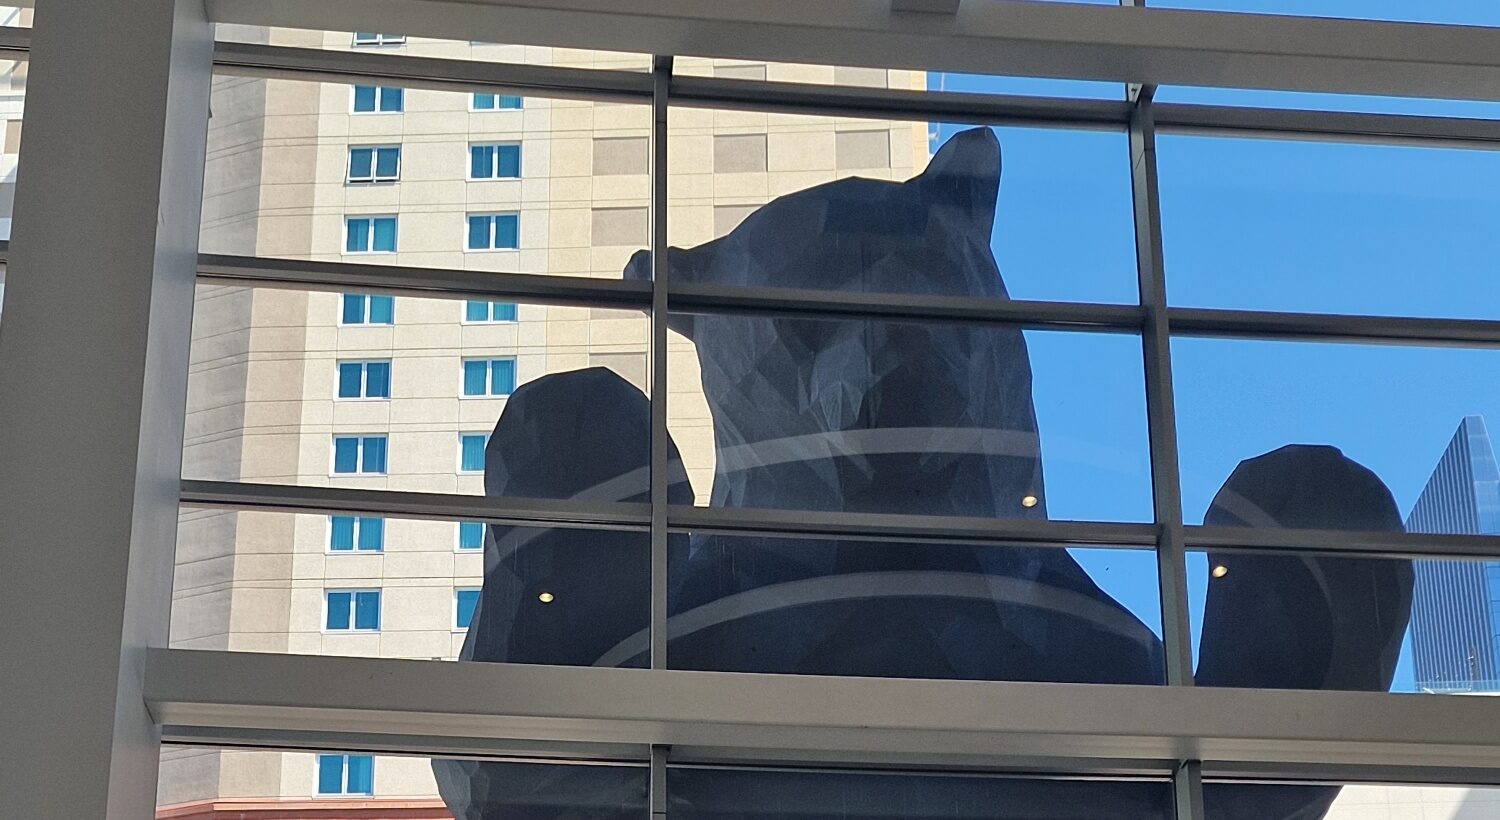 Big blue bear in Denver